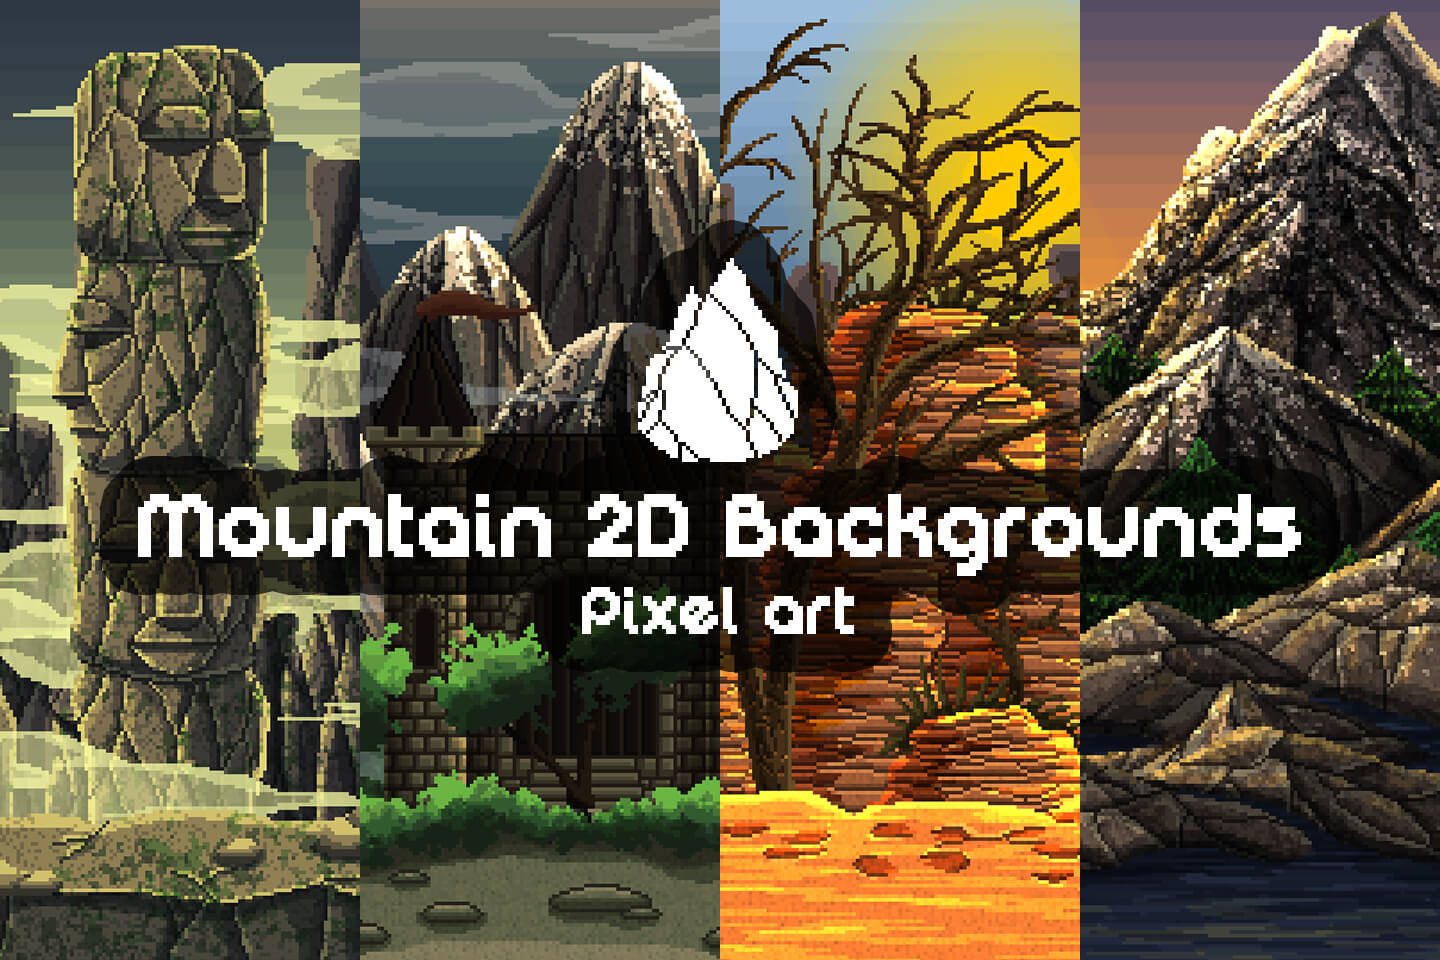 Với hình ảnh pixel art dãy núi tuyệt đẹp, bạn sẽ được hòa mình vào những cảnh vật đẹp như trong tranh, tạo nên một trải nghiệm thể loại mỹ thuật độc đáo. Hãy sẵn sàng để khám phá chúng ngay hôm nay.